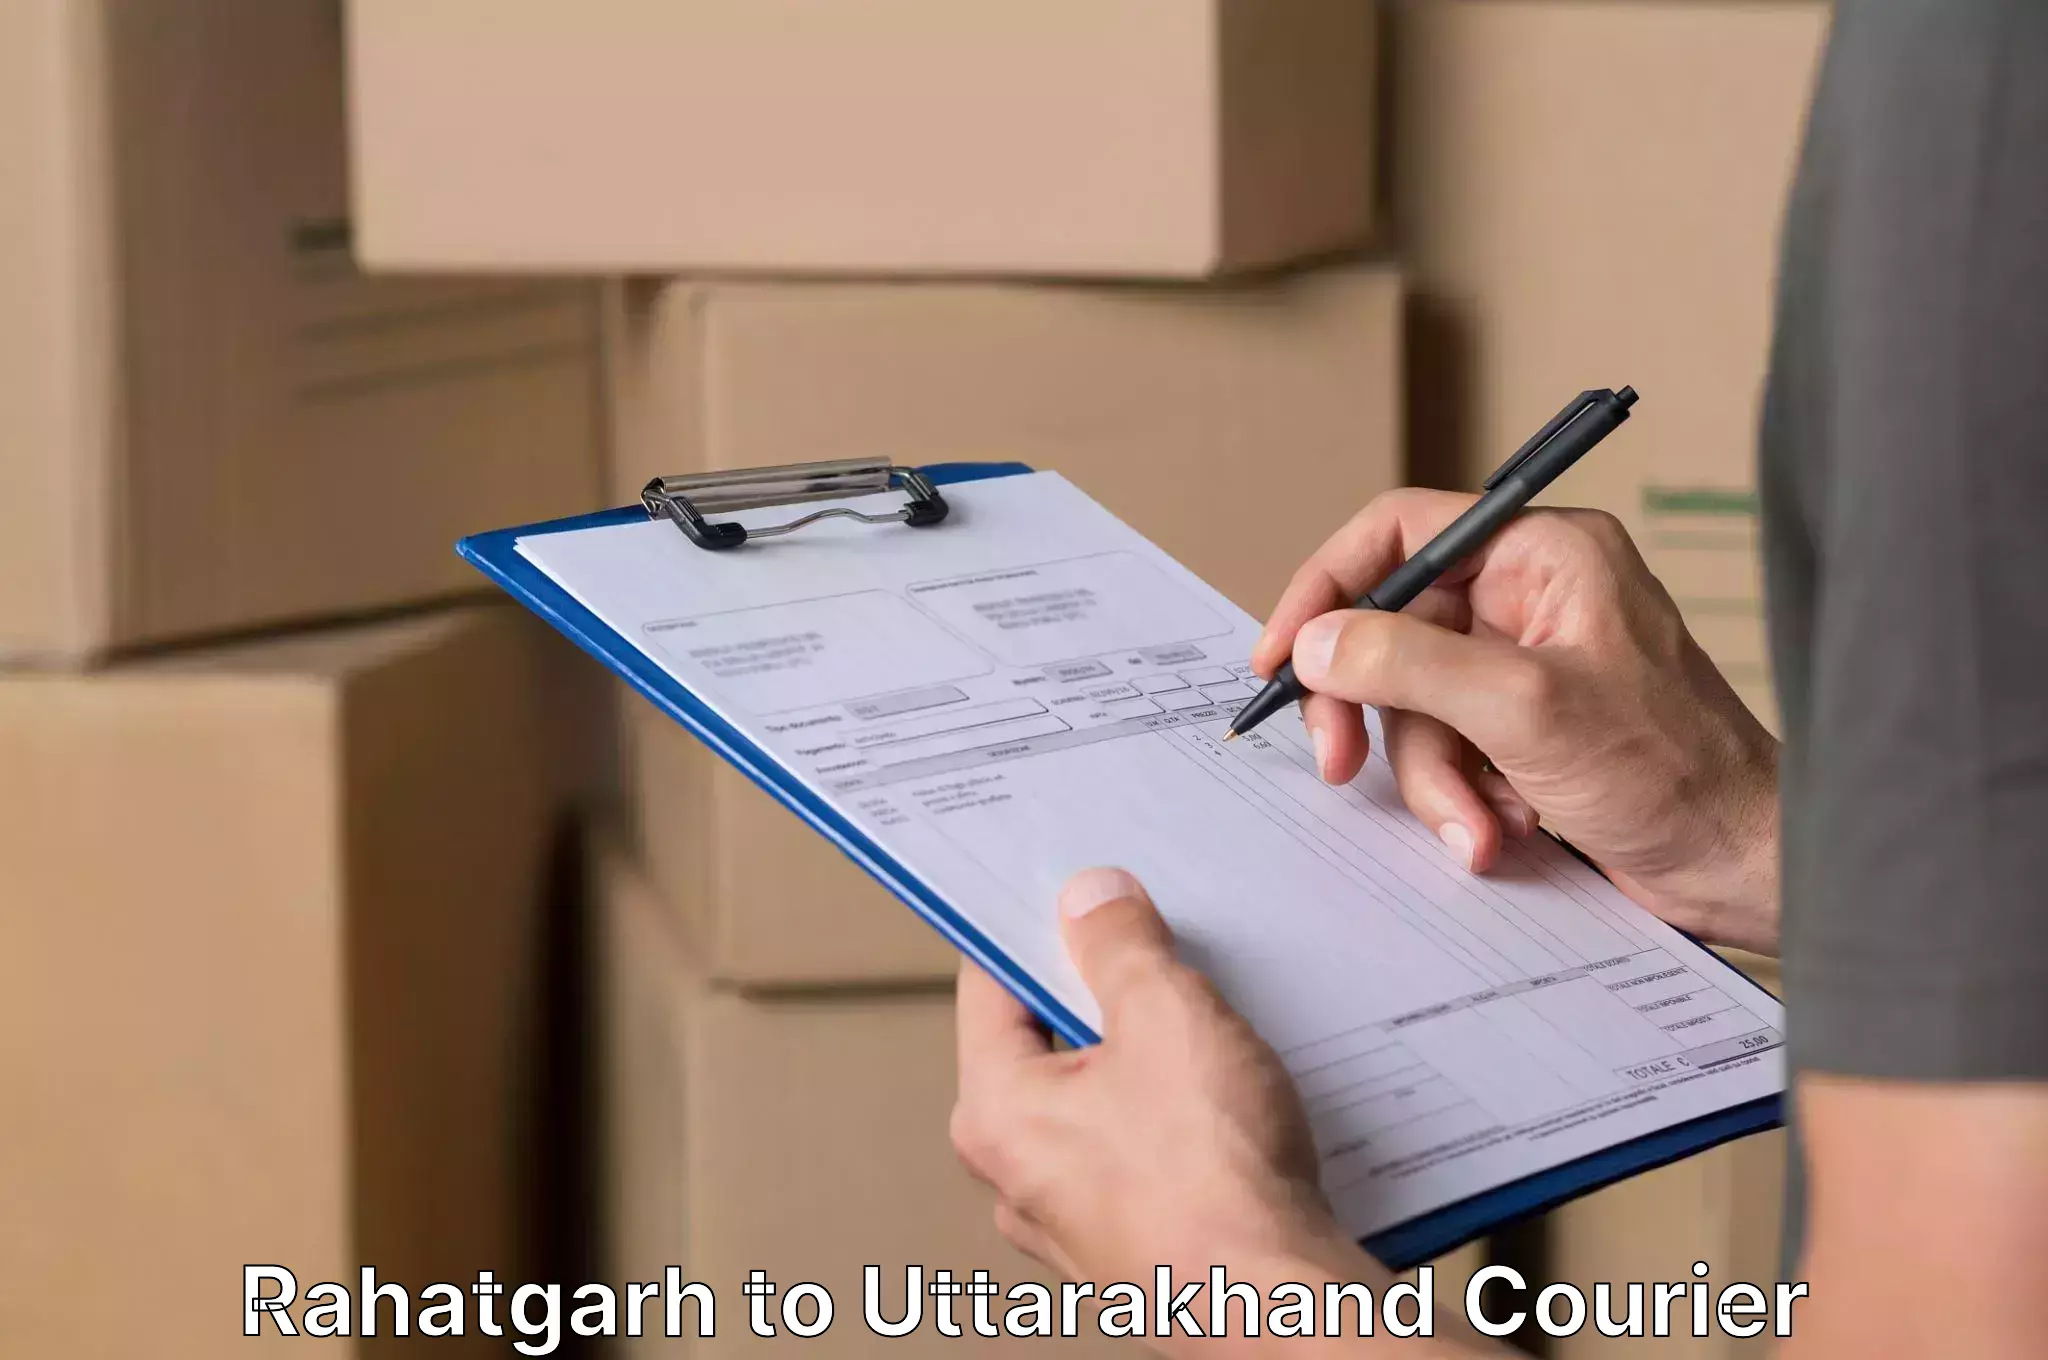 Moving and handling services Rahatgarh to Nainital